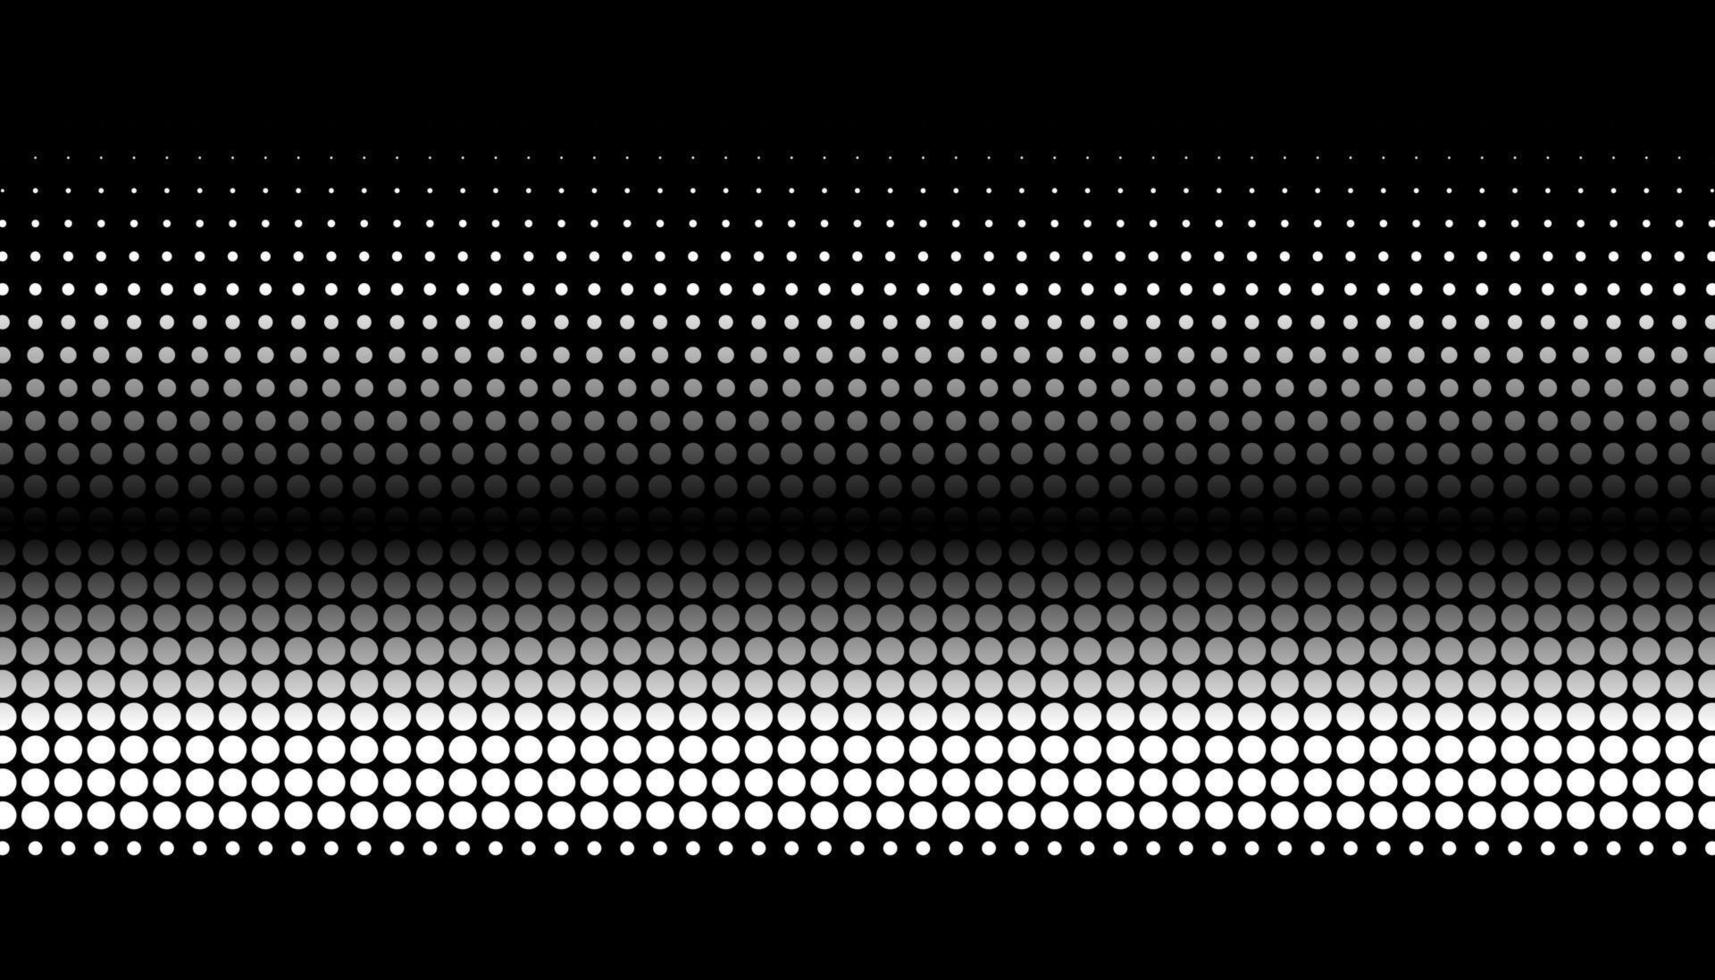 degradado de semitonos retro de puntos. fondo monocromo de semitono blanco y negro con círculos. ilustración vectorial vector